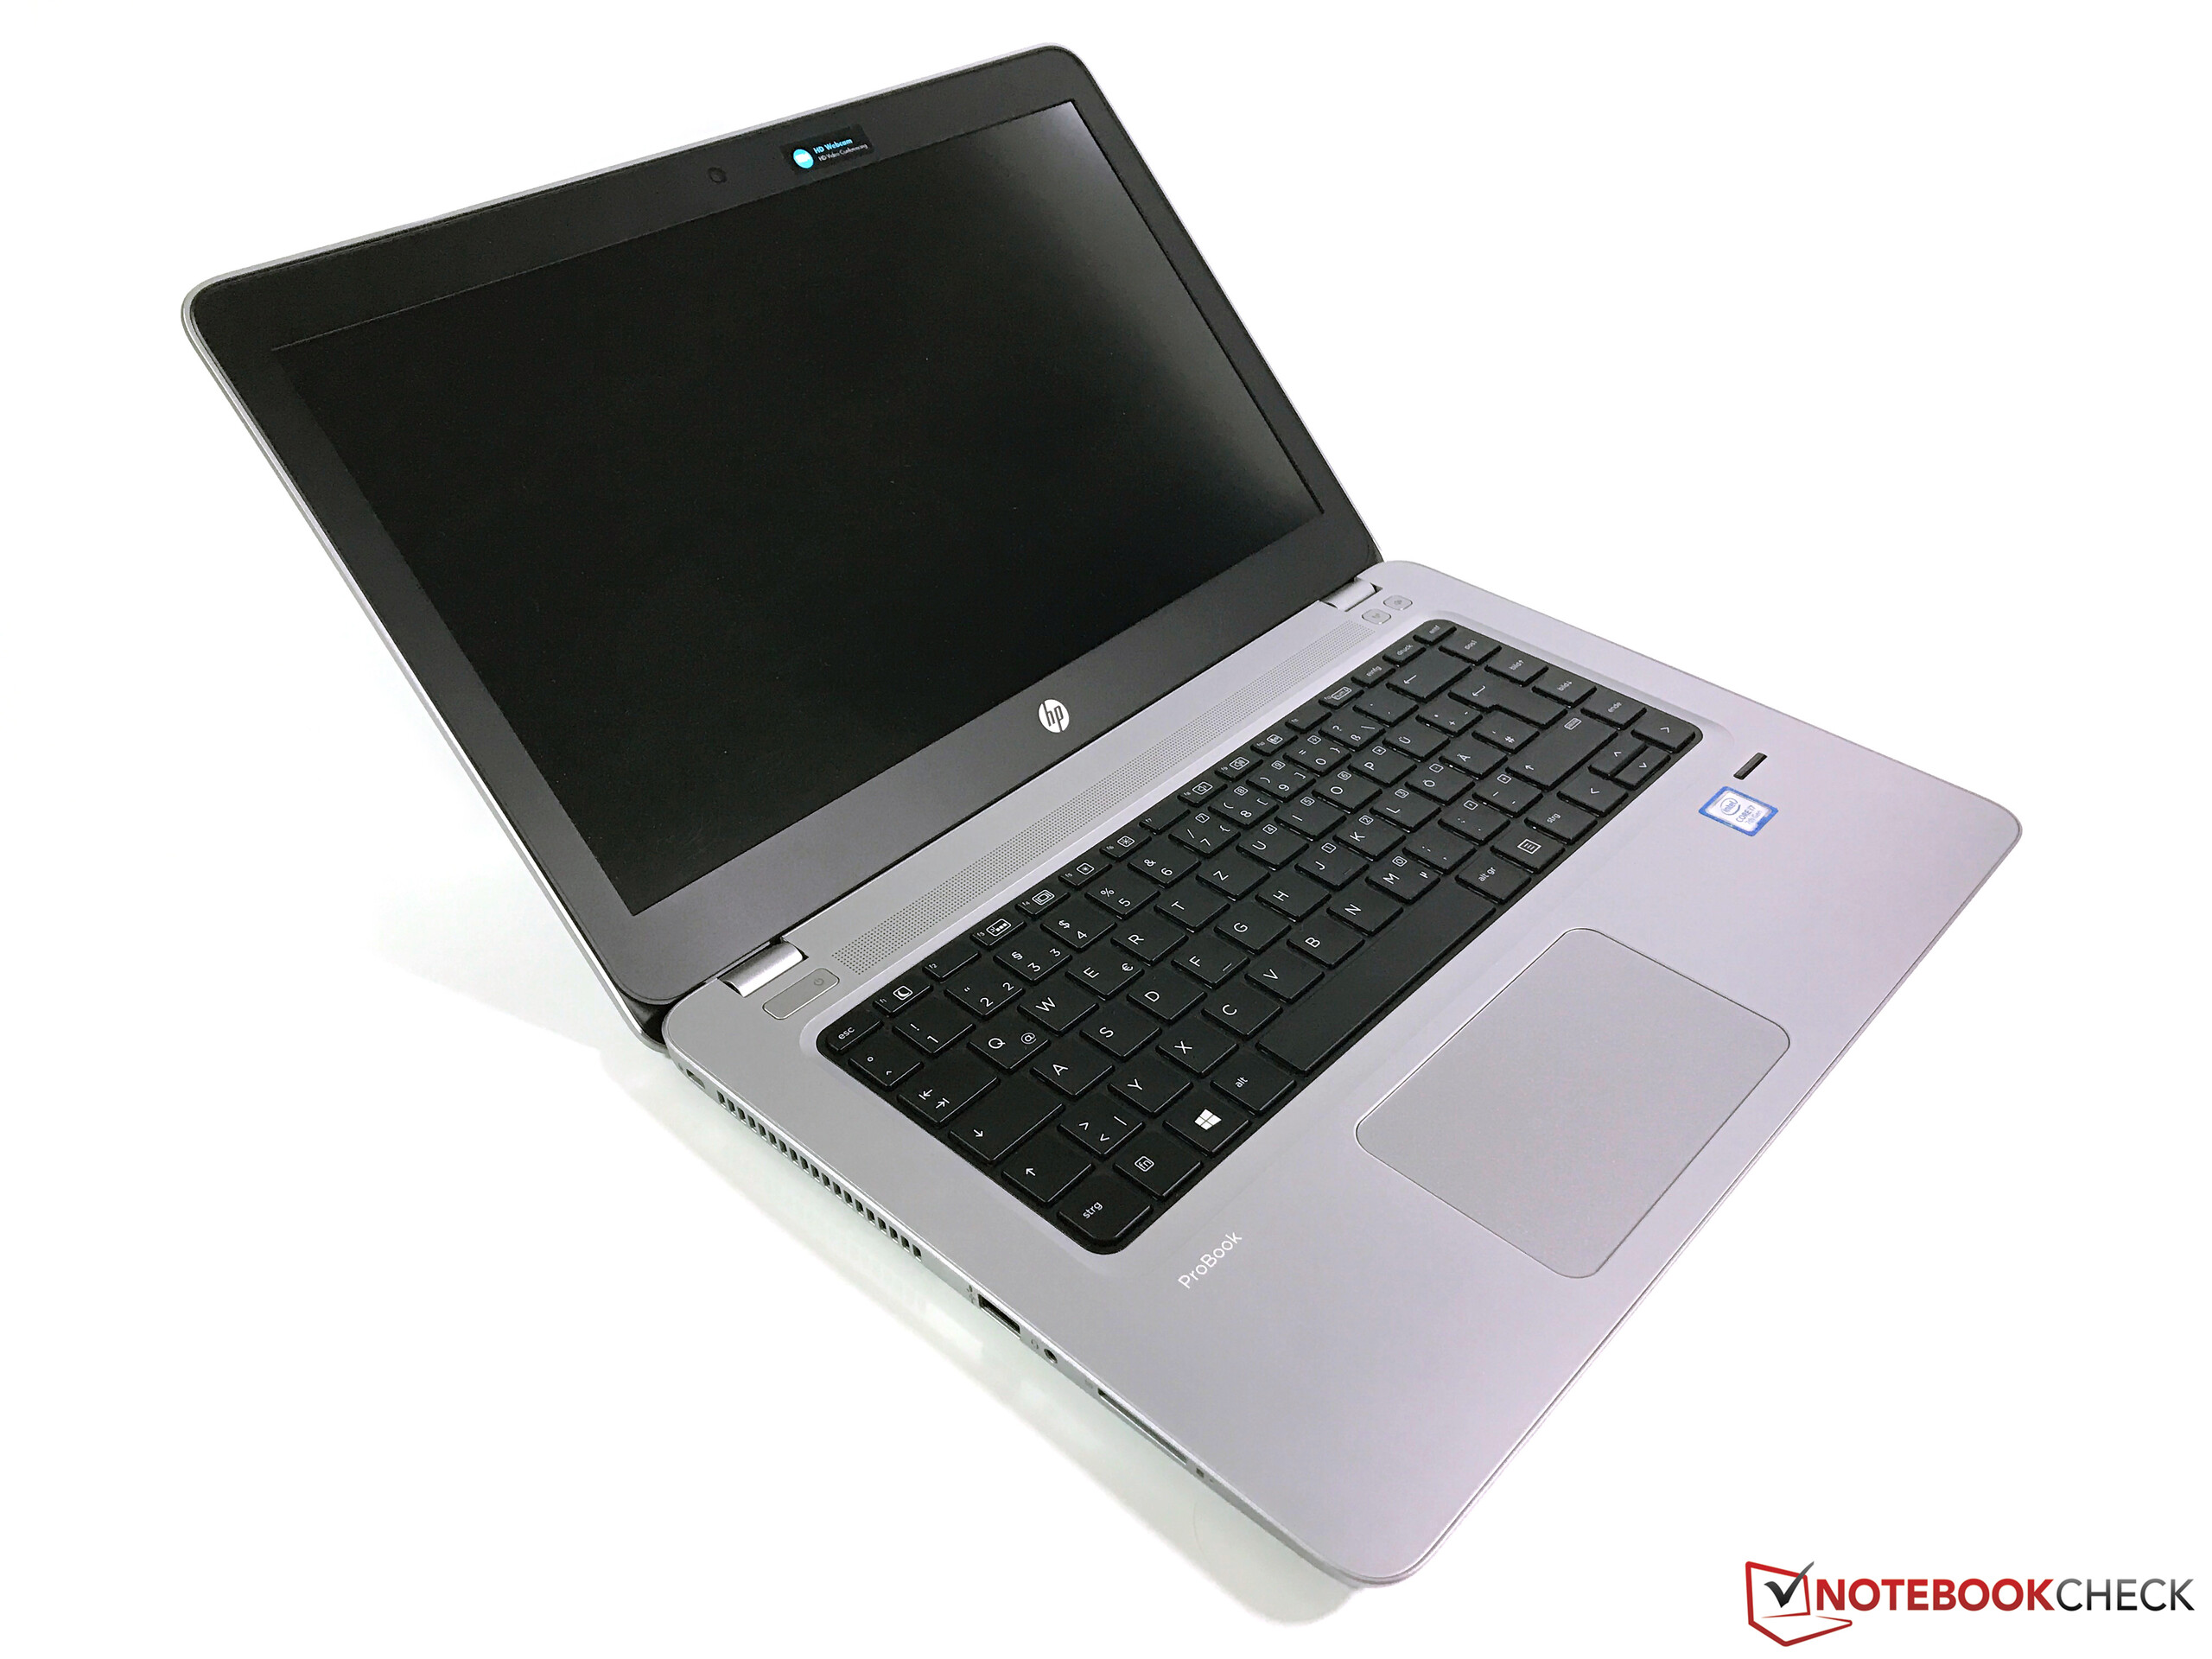 ProBook 470 G4 Notebook PC